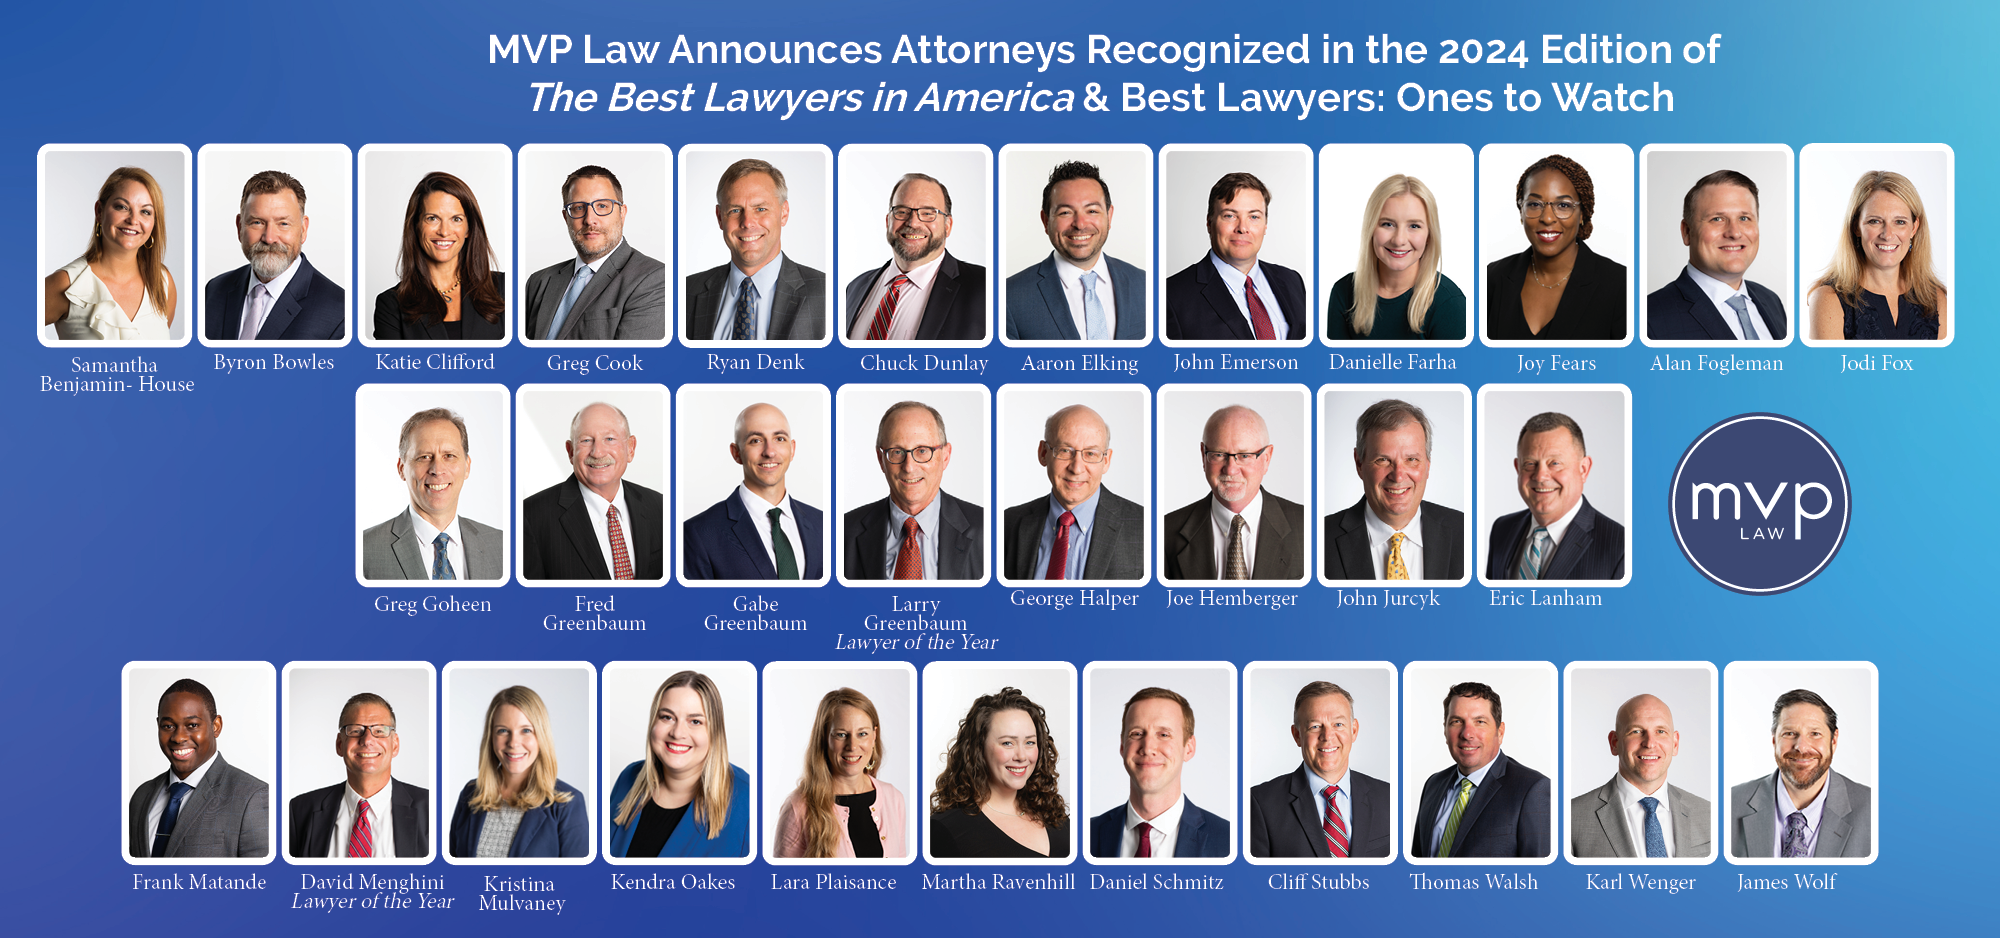 Best Lawyers 2024
MVP Law